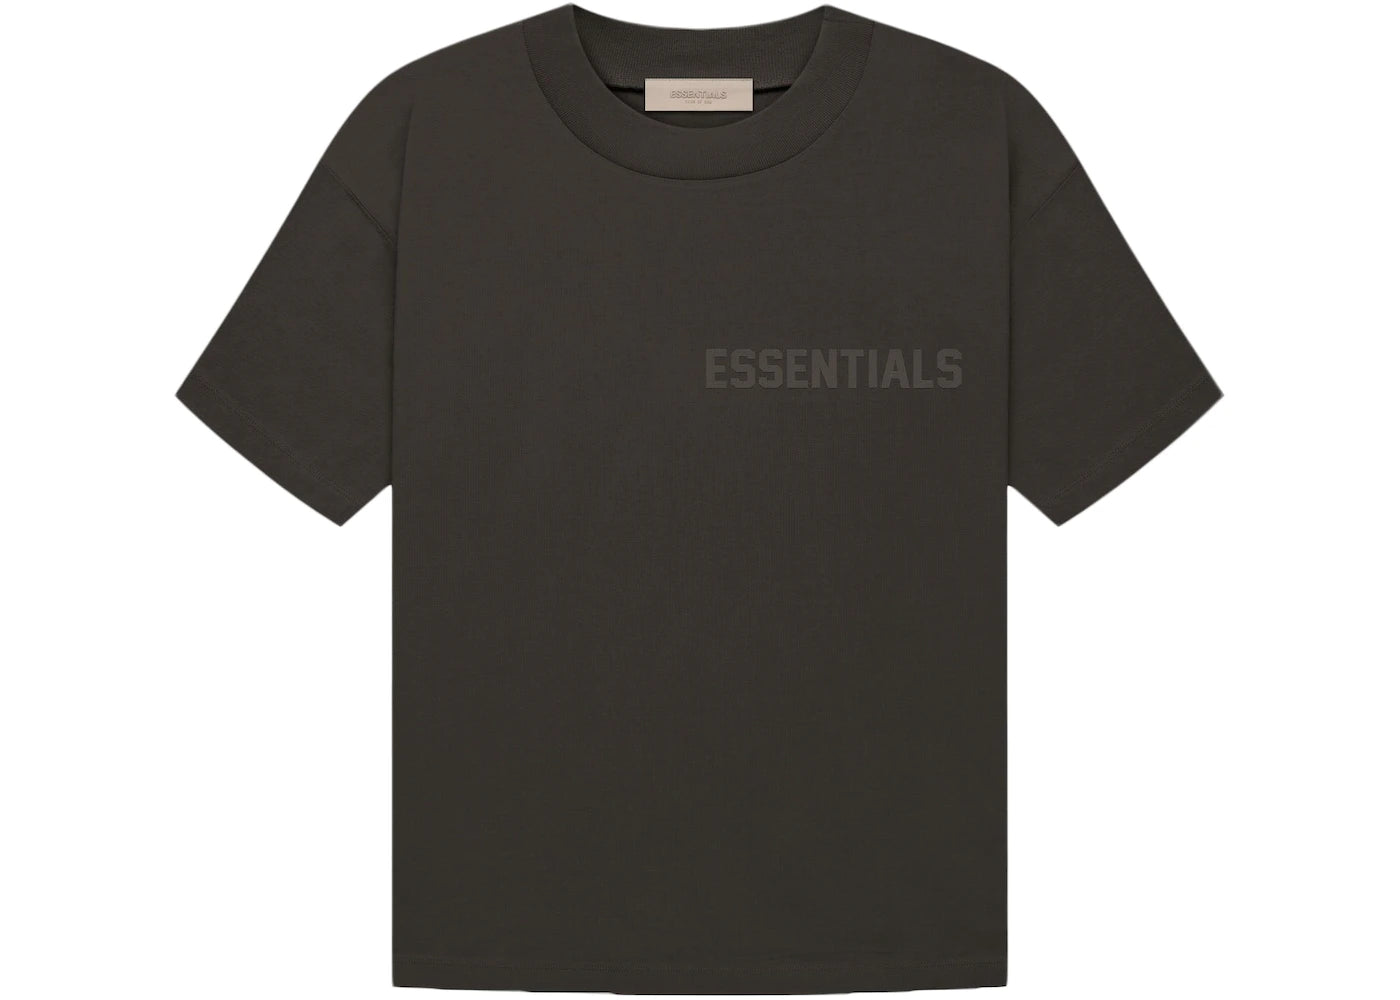 Camiseta Fear of God Essentials Off Black